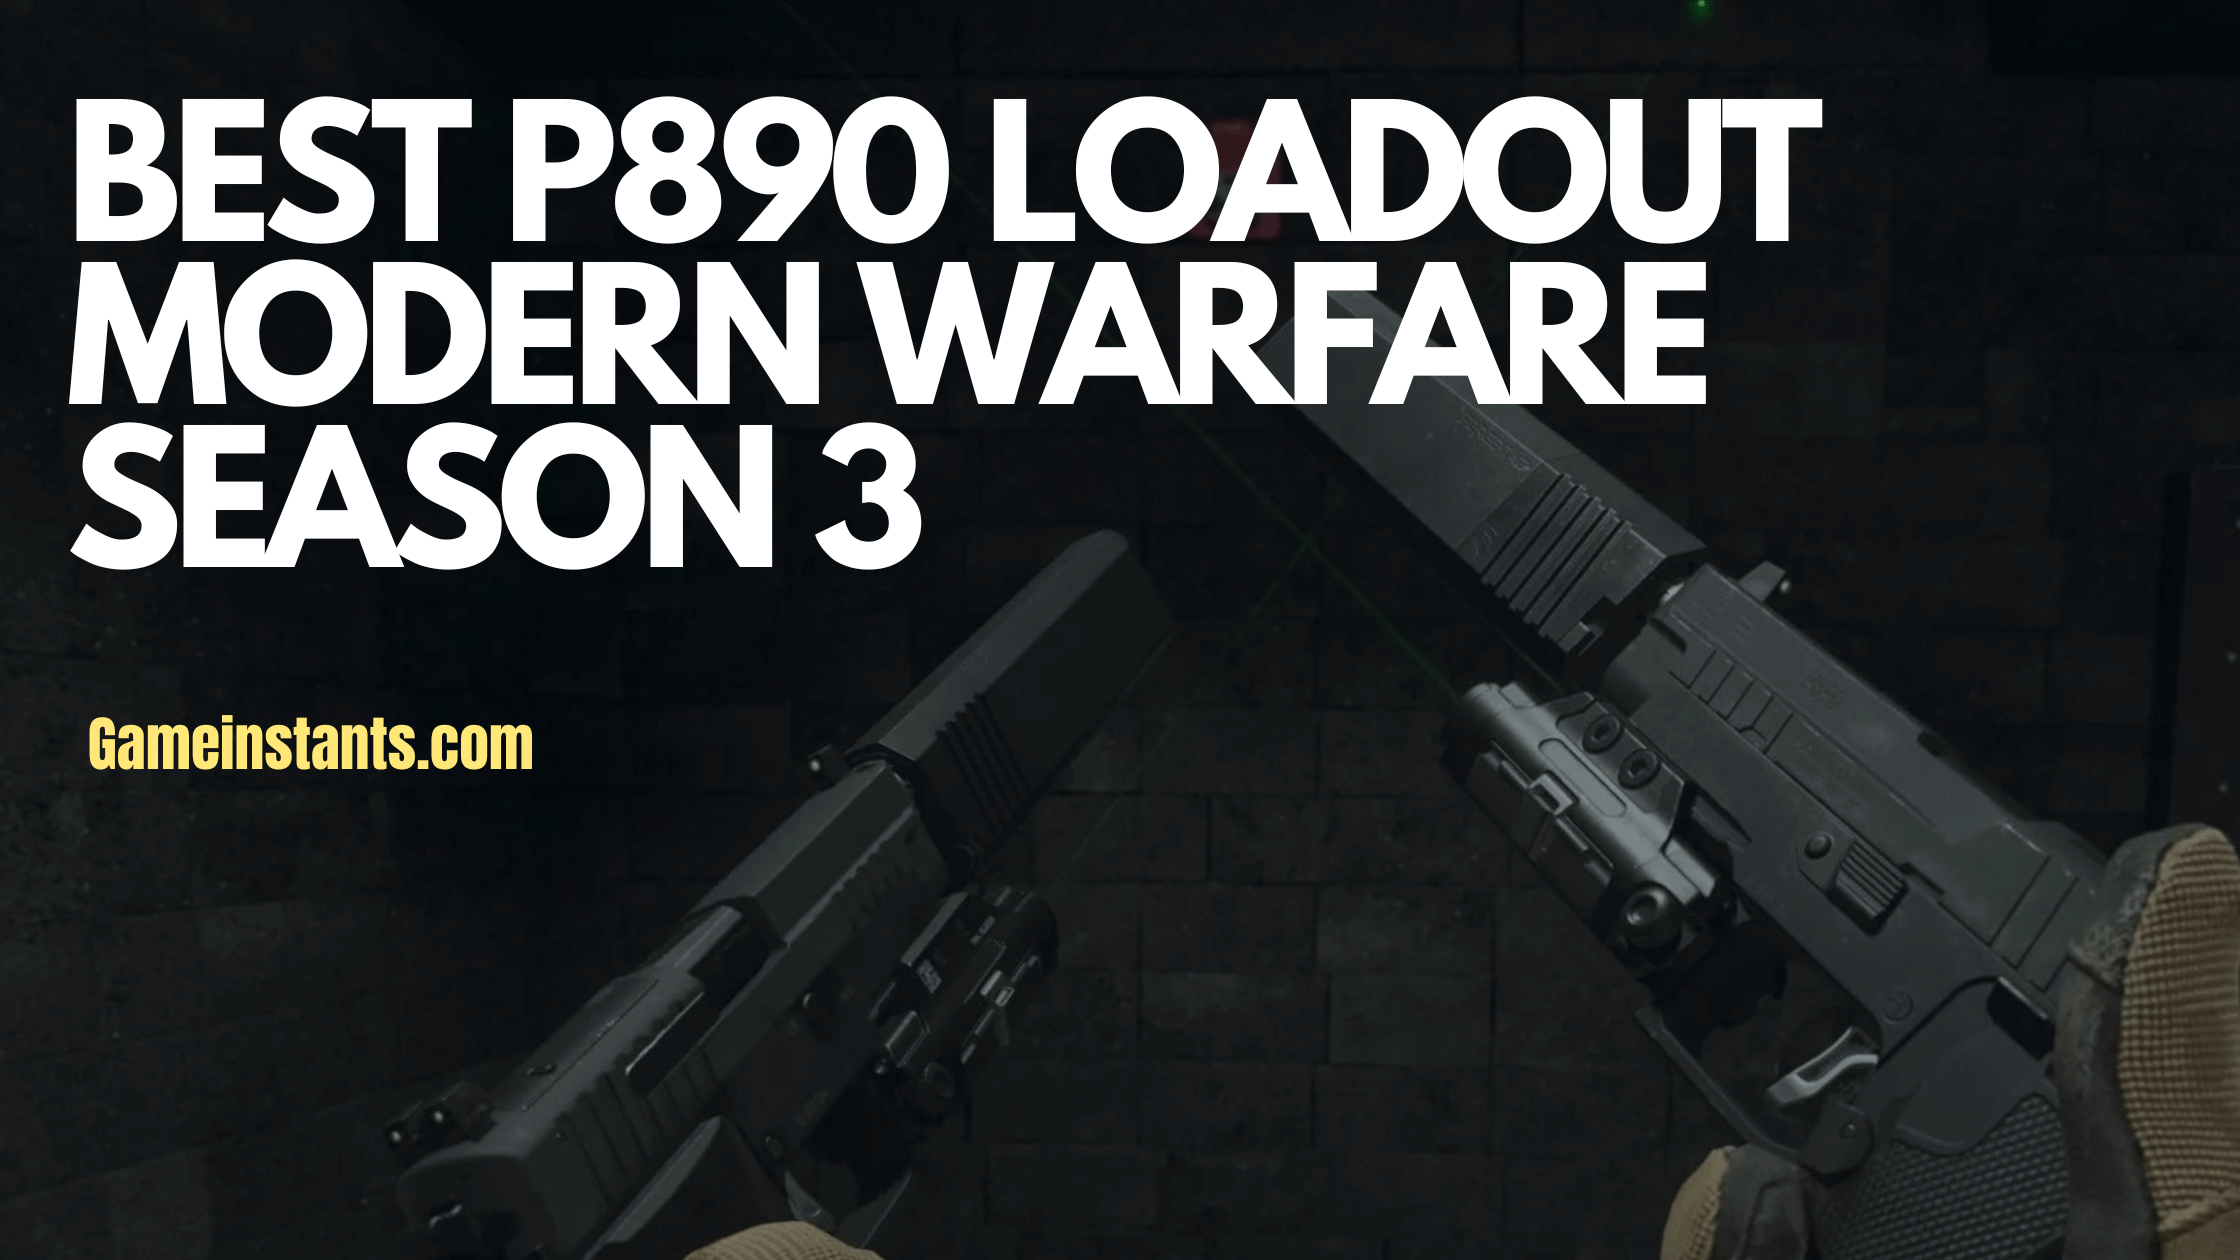 Best P890 Loadout Modern Warfare Season 3